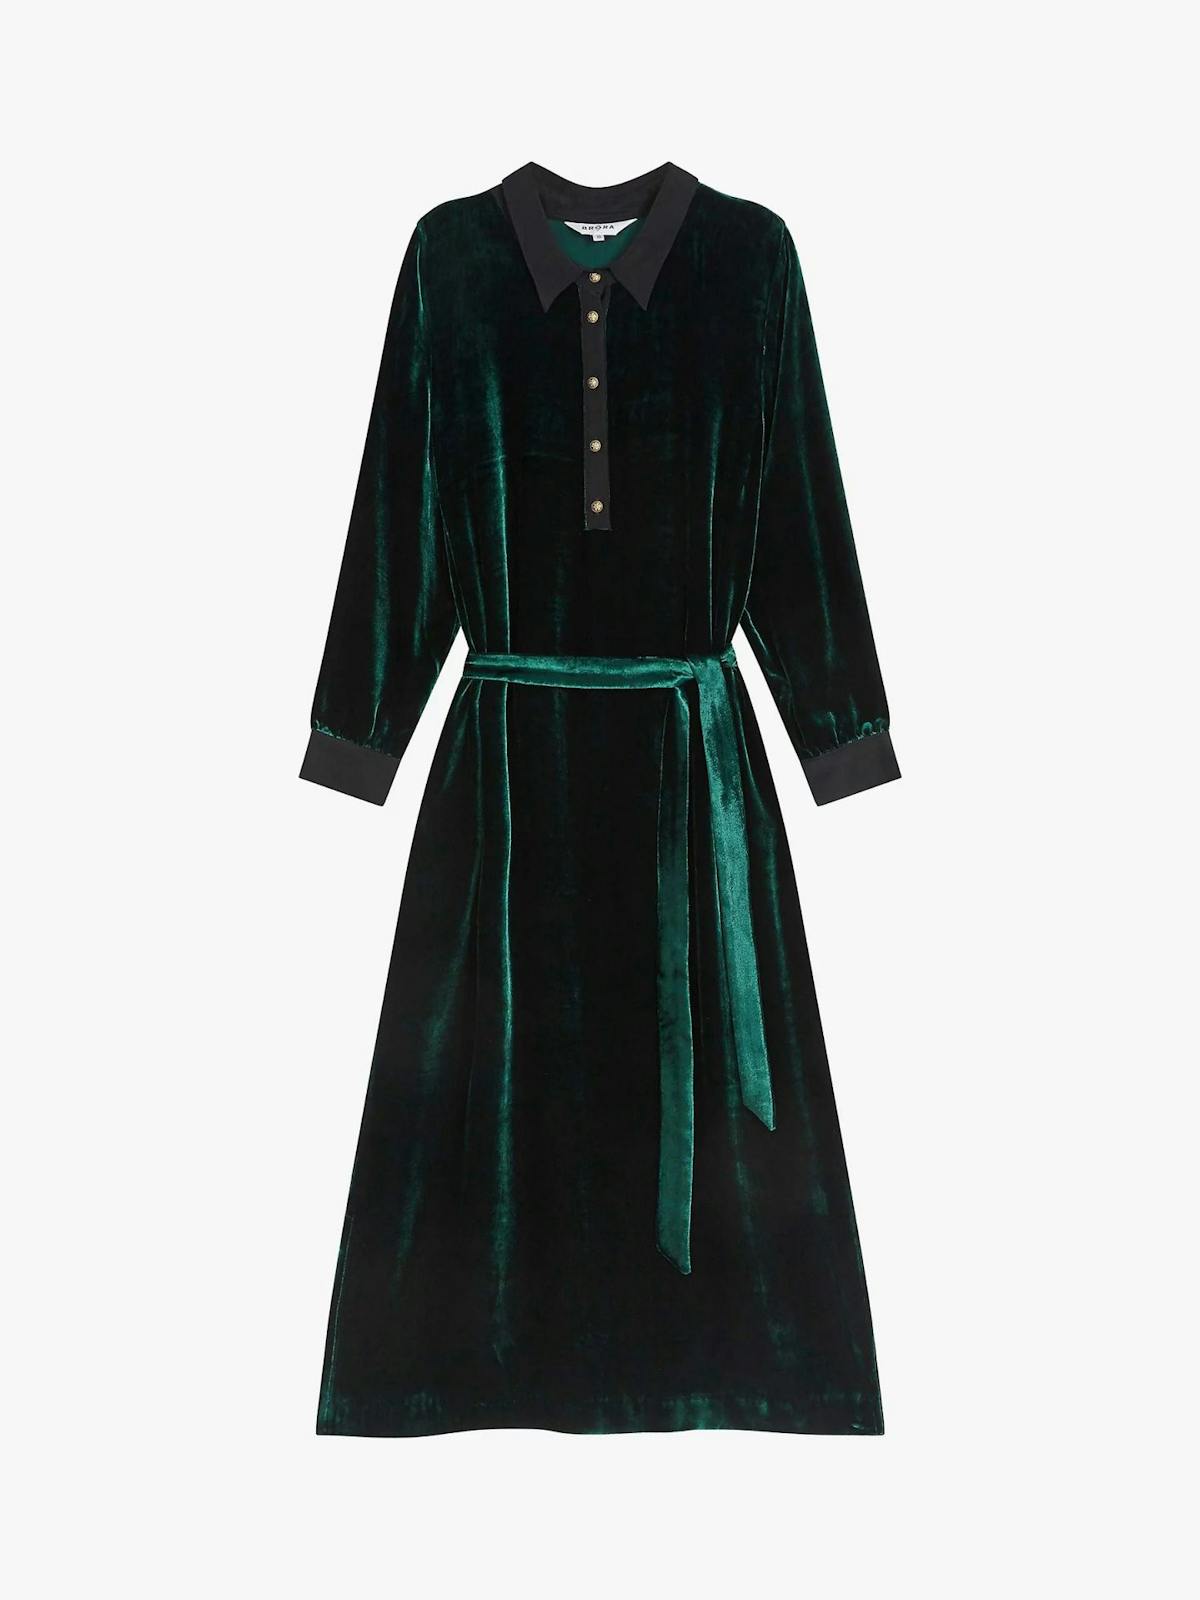 Best dresses for Christmas day: Brora green velvet shirt dress